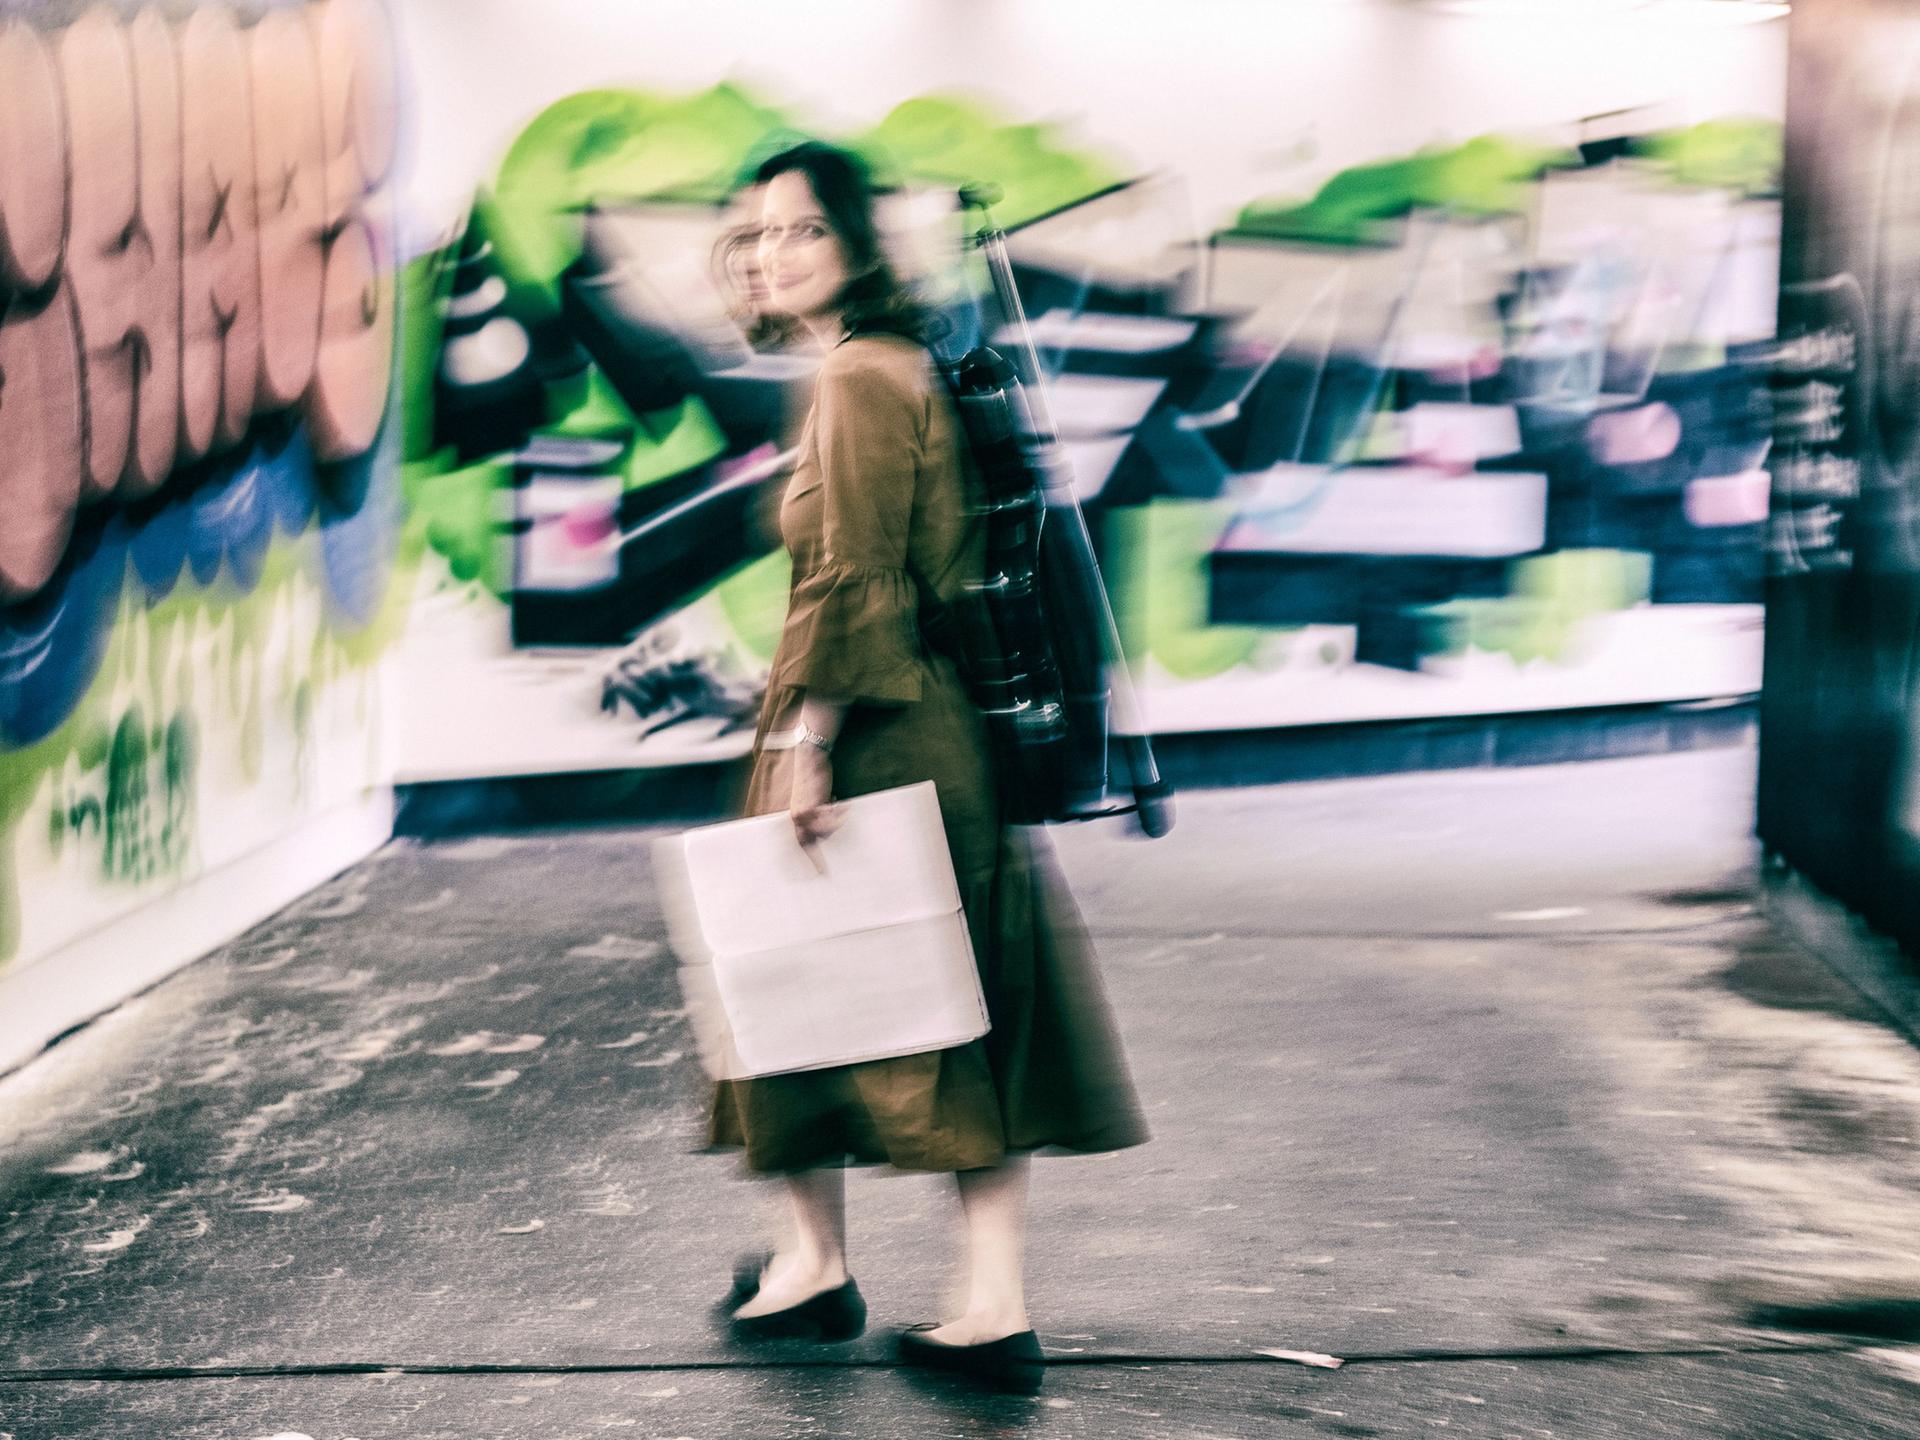 Patrica Kopatchinskaja steht in einer Unterführung mit Graffiti. Sie trägt ihren Geigenrucksack auf dem Rücken und hält Noten in der Hand. Das Bild fängt ihre Bewegung mit ein.